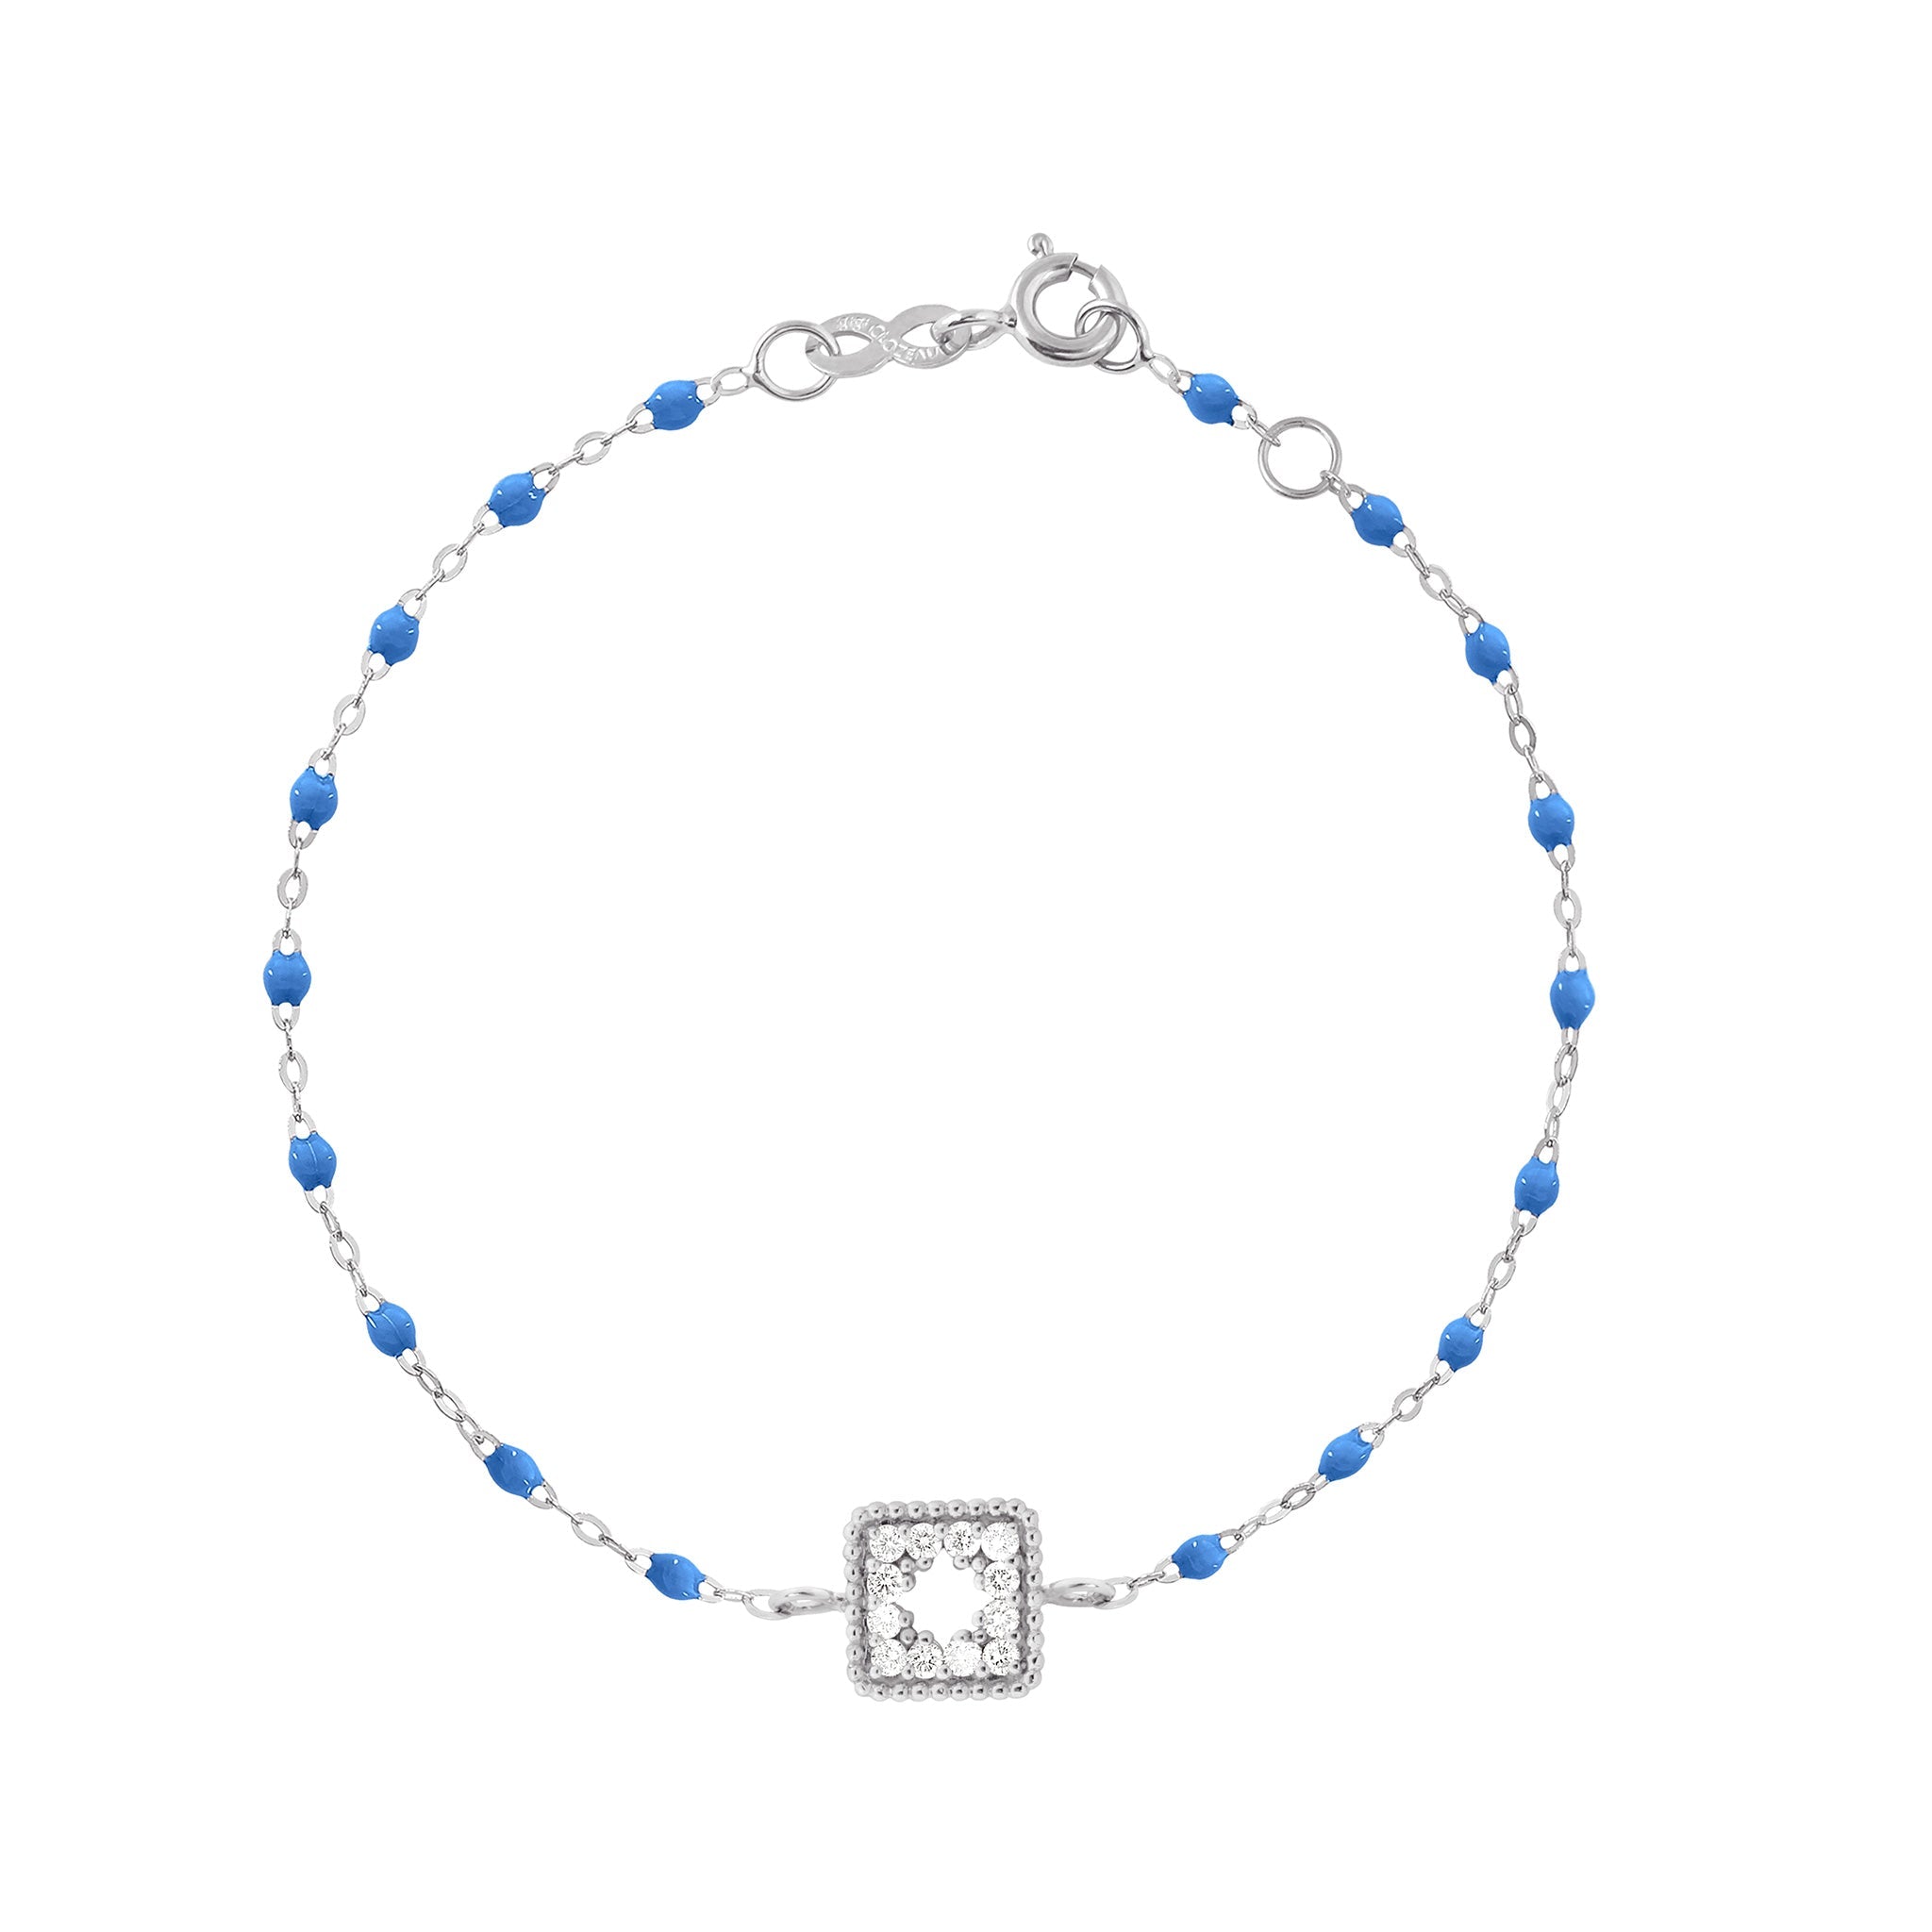 Bracelet bleu fluo Trésor, diamants, or blanc, 17 cm  Référence :  b3tr001g0417di -1